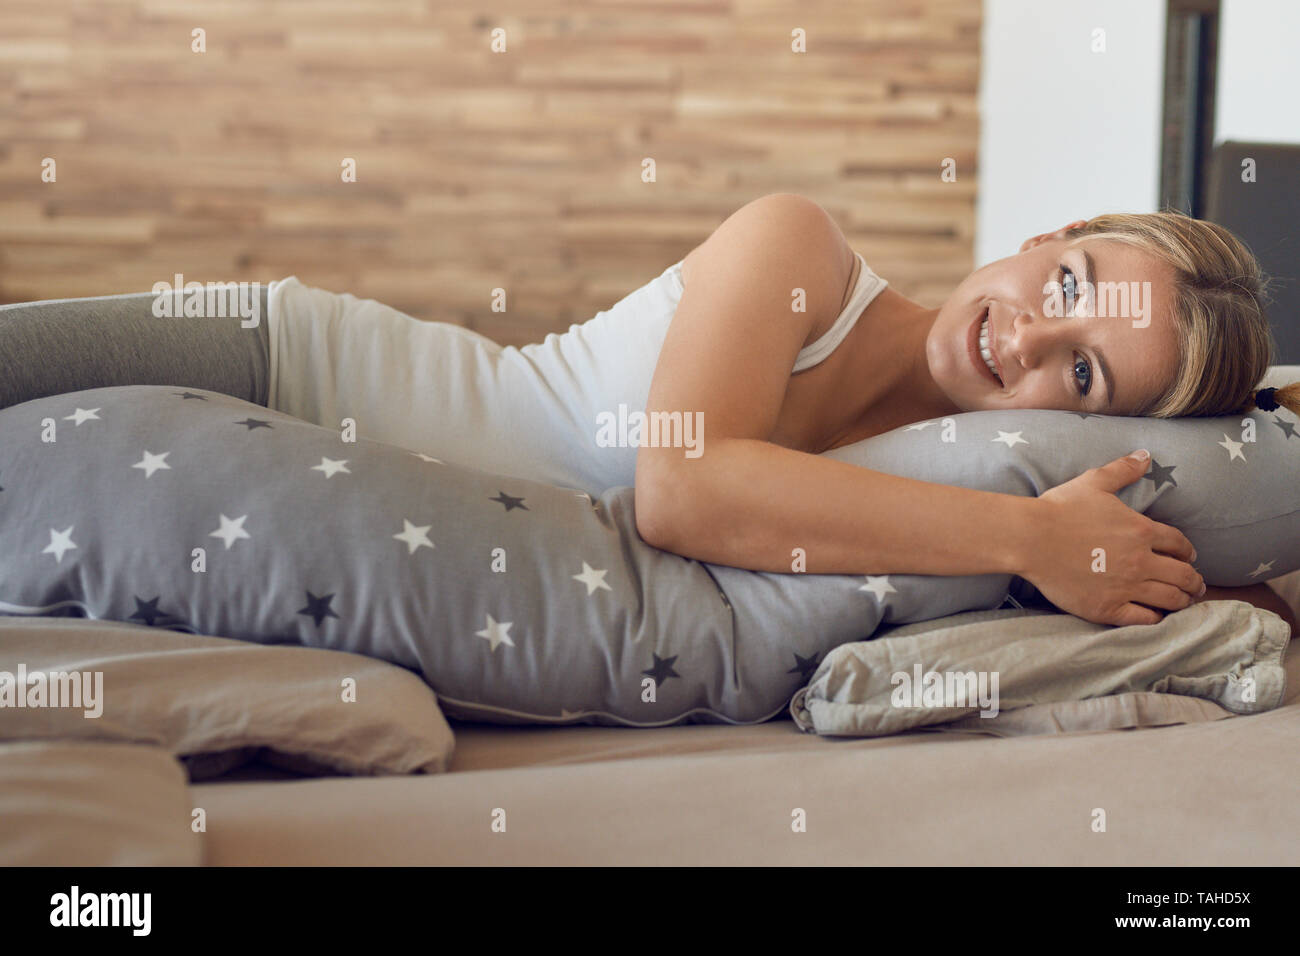 Glückliche gesunde junge schwangere Frau ruht auf einem Bett mit einem speziellen Kissen als Unterstützung in die Kamera schaut mit einem reizenden Lächeln Stockfoto